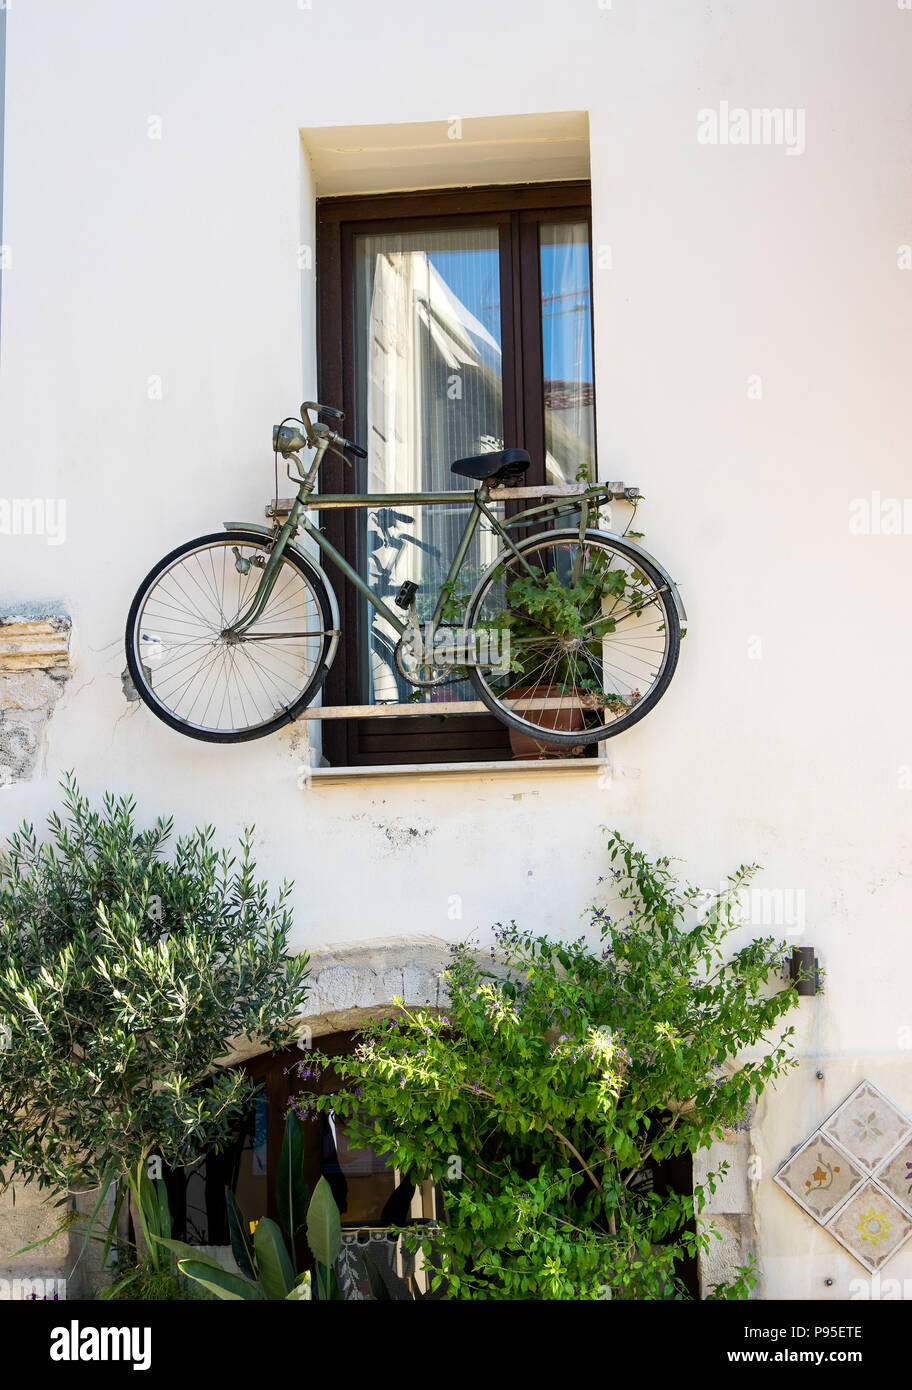 Street View di Rethimno città vecchia, Creta, Grecia Foto Stock